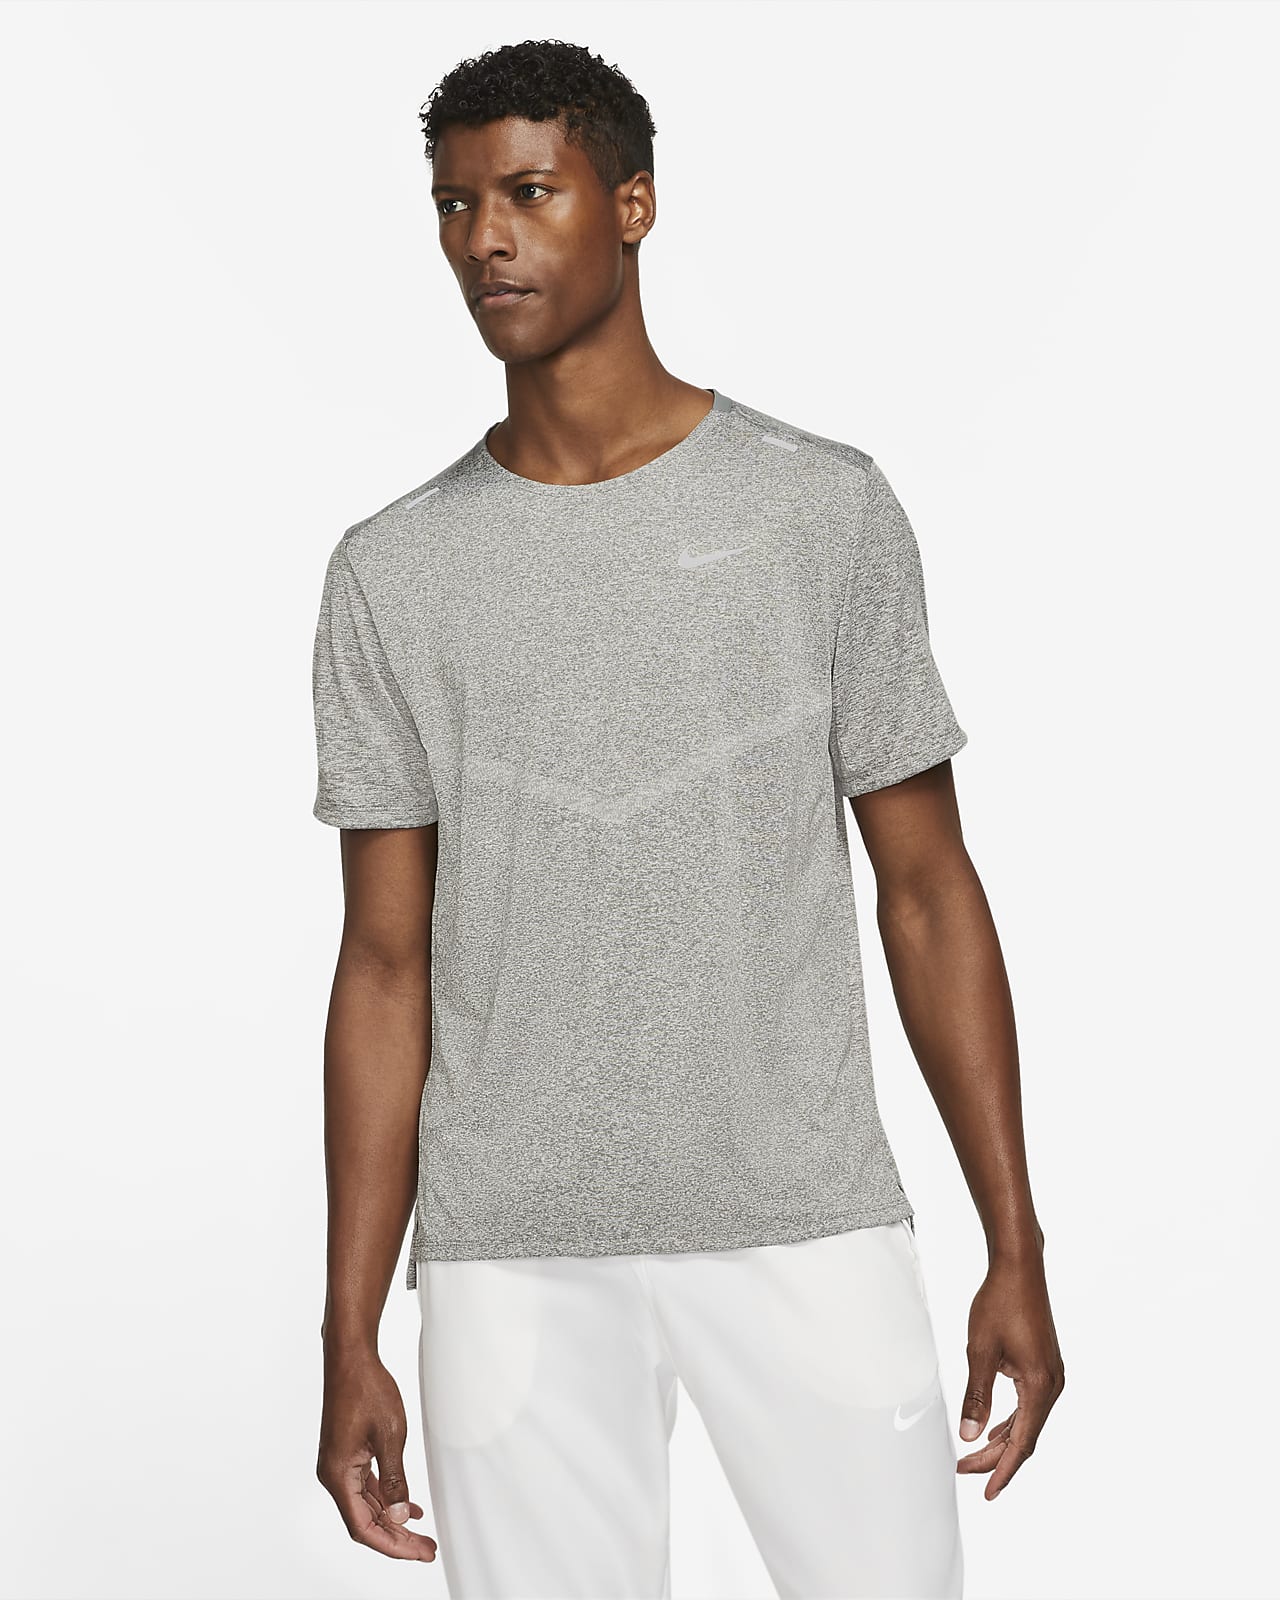 Ανδρική κοντομάνικη μπλούζα για τρέξιμο Dri-FIT Nike Rise 365